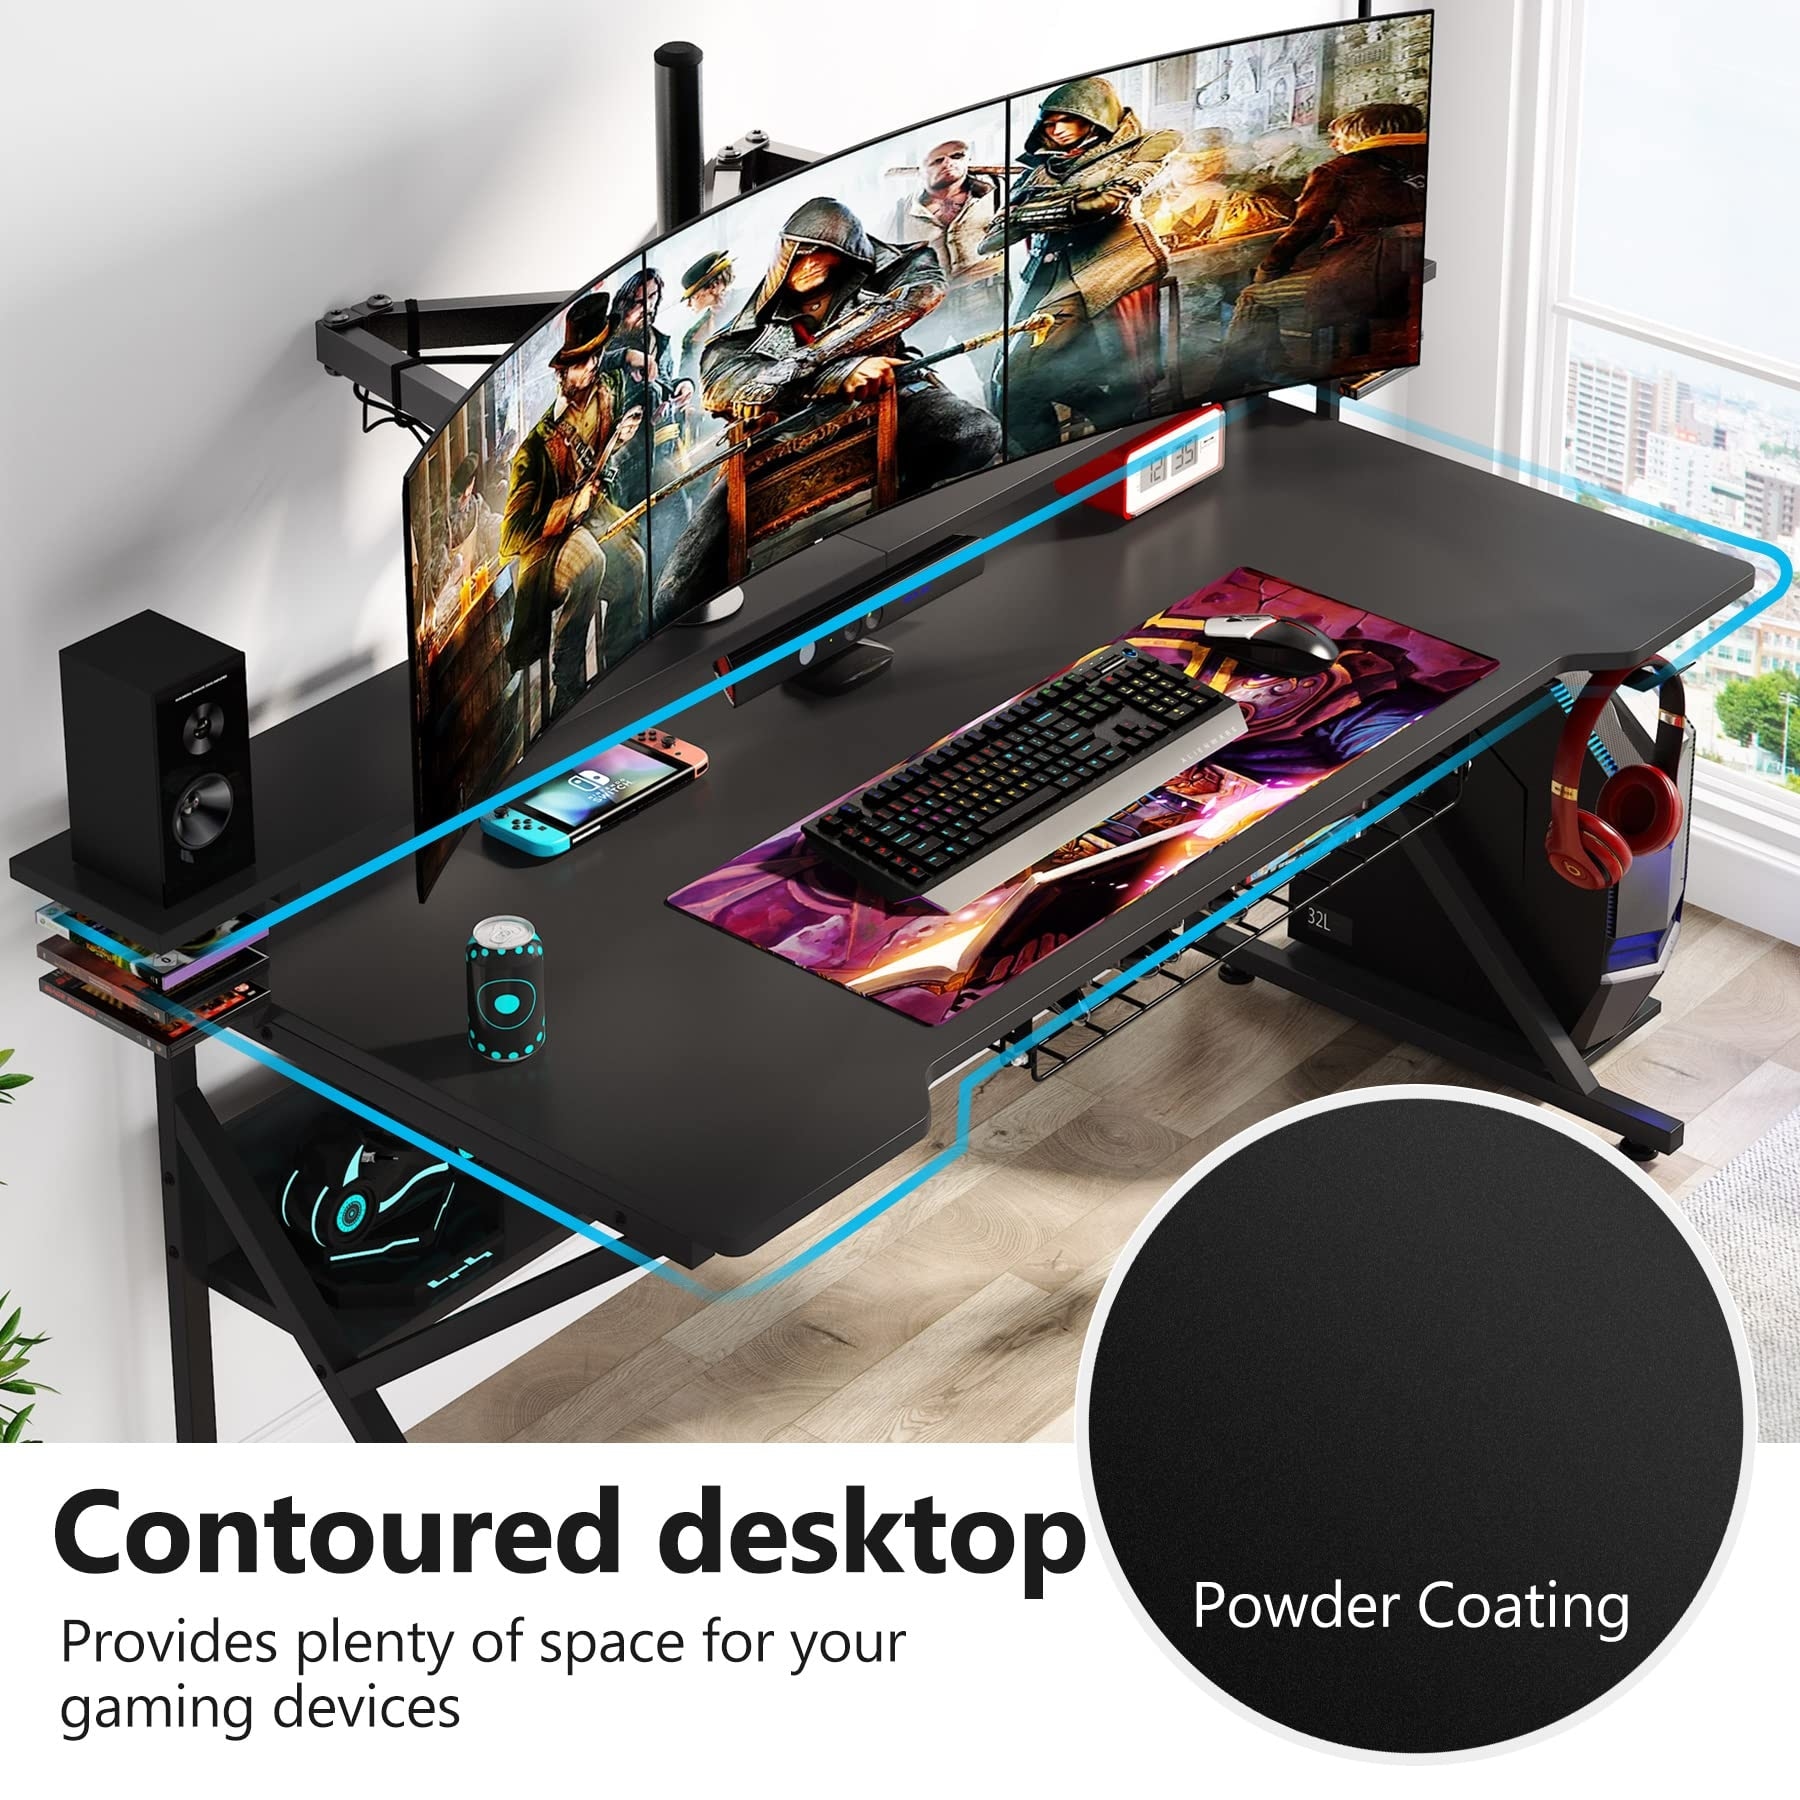 Homcom Gaming Computer Desk, Home Office Gamer Table Workstation